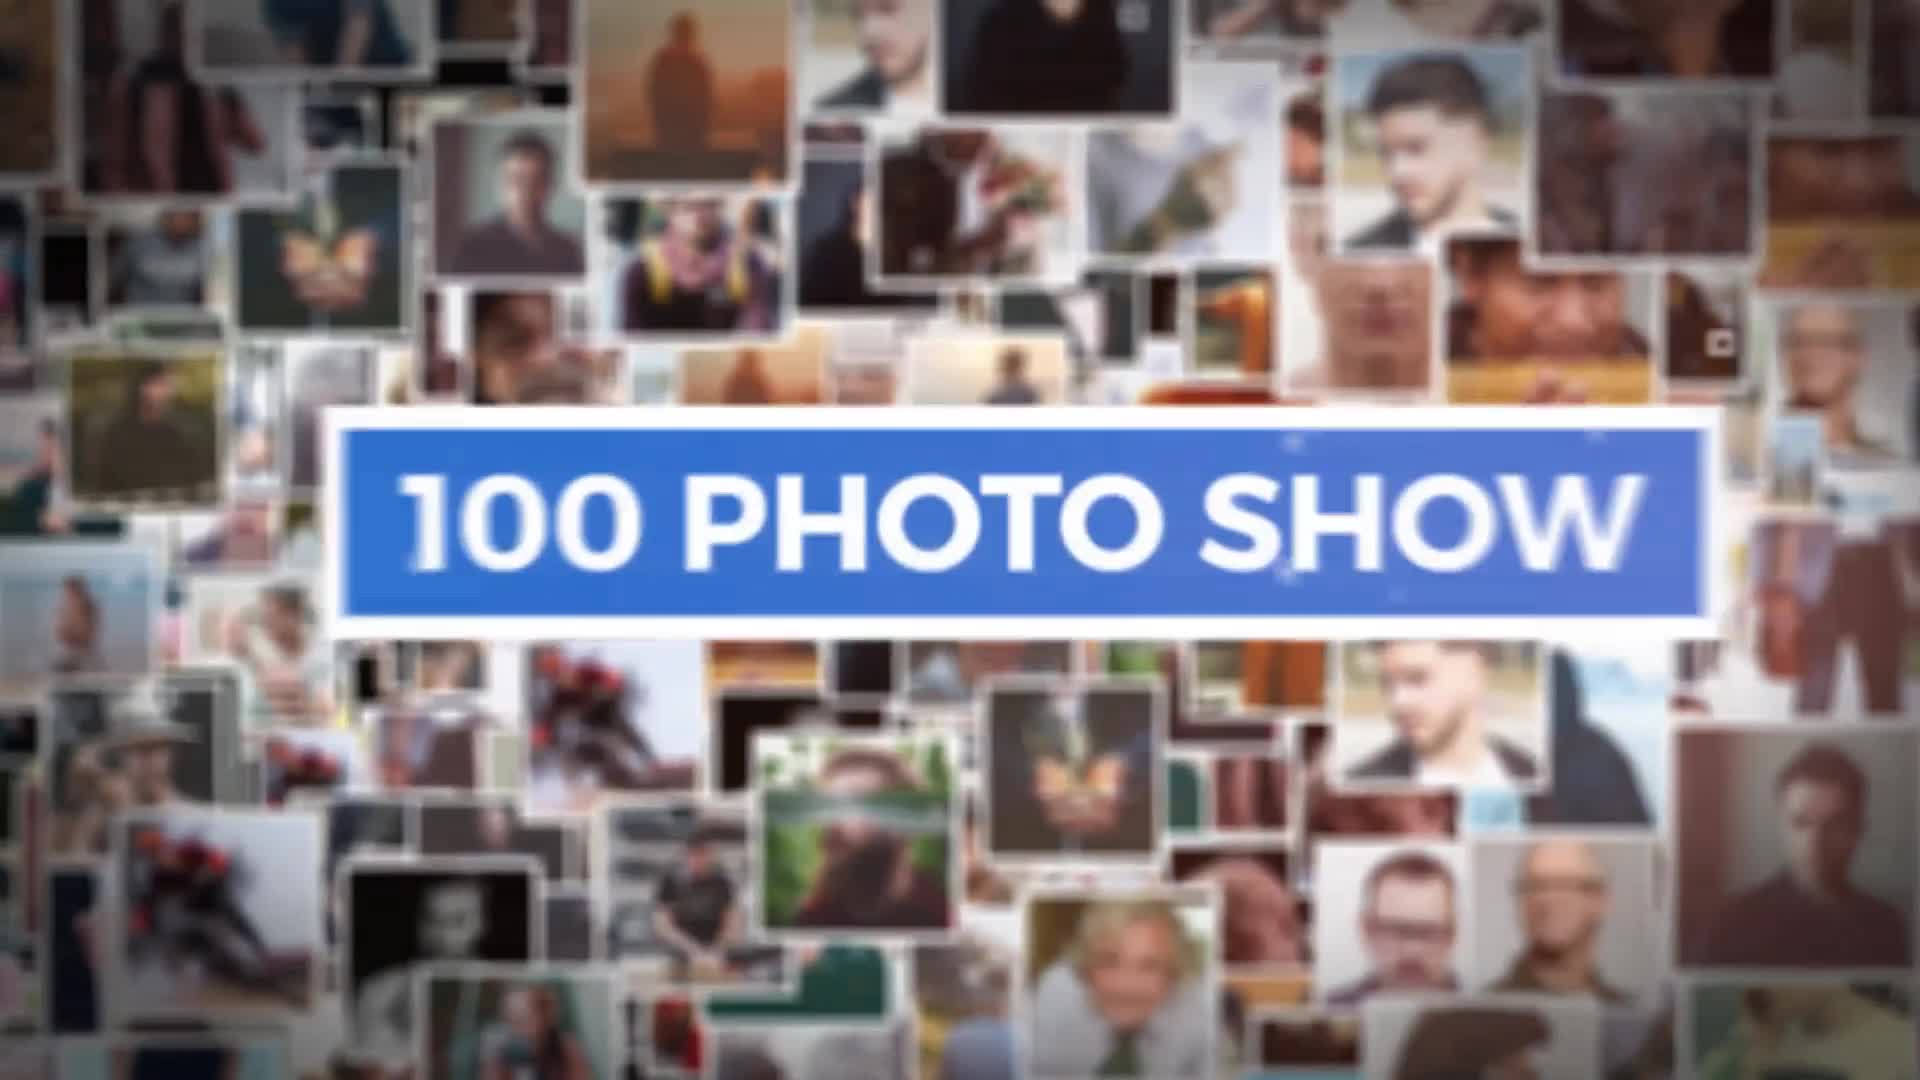 100 Photo Show | Premiere Pro Videohive 39492258 Premiere Pro Image 1